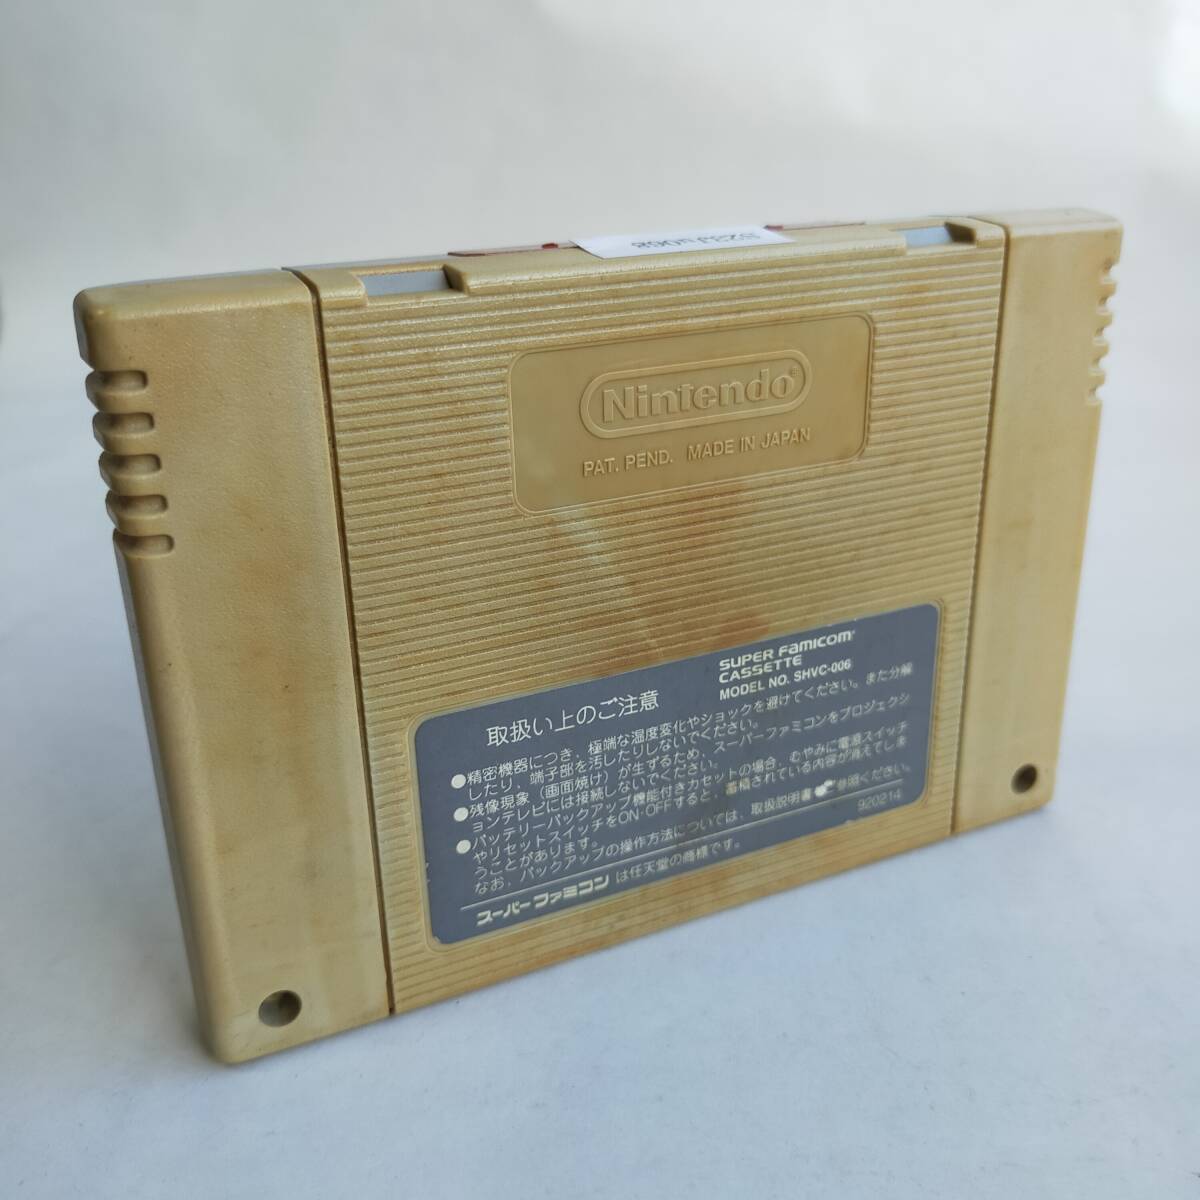 [ включение в покупку возможно ] Mario краска ( soft одиночный товар ) Super Famicom рабочее состояние подтверждено * терминал чистка settled [SFC6622_2307068]